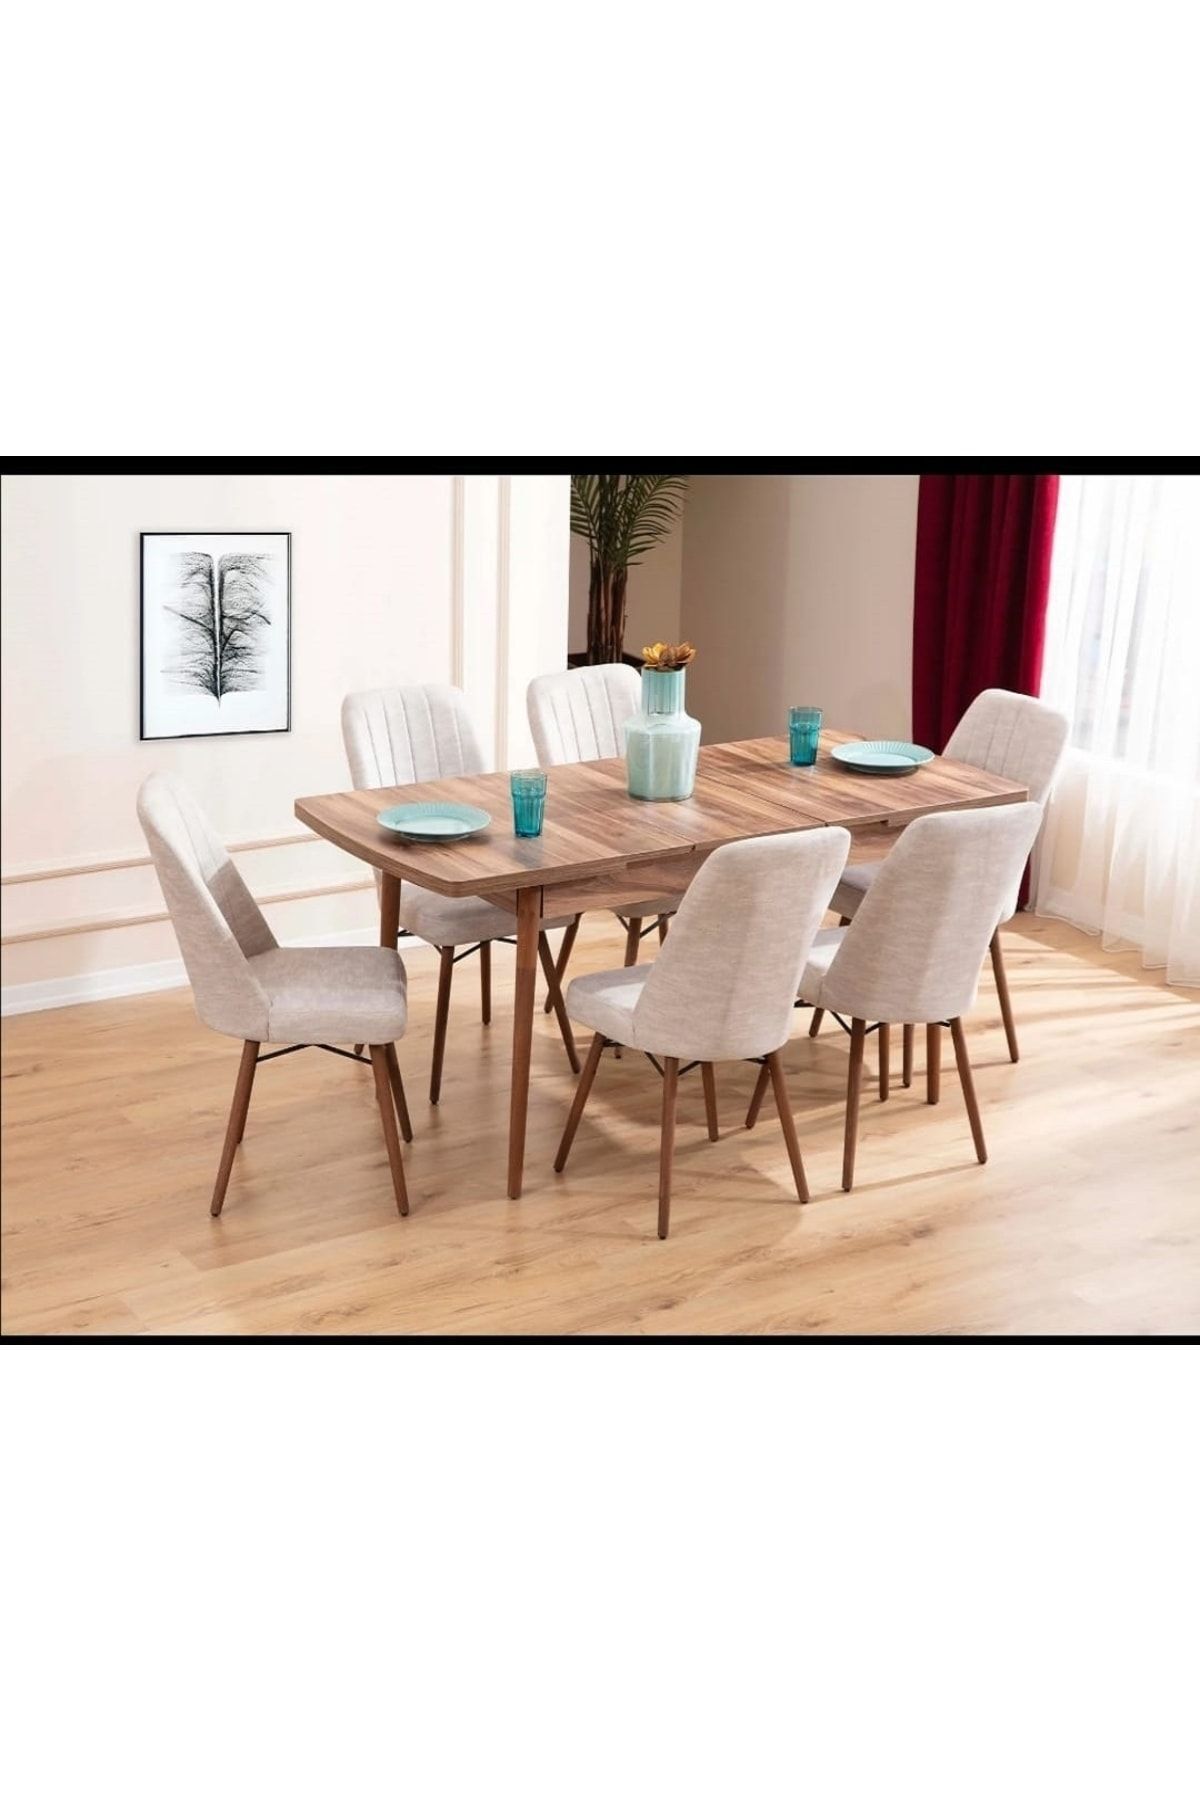 Kaktüs Avm 6 Kişilik Açılır Masa Sandalye Takımı Mutfak Masası Takımı Salon Masası Yemek Masası Masa Takımı